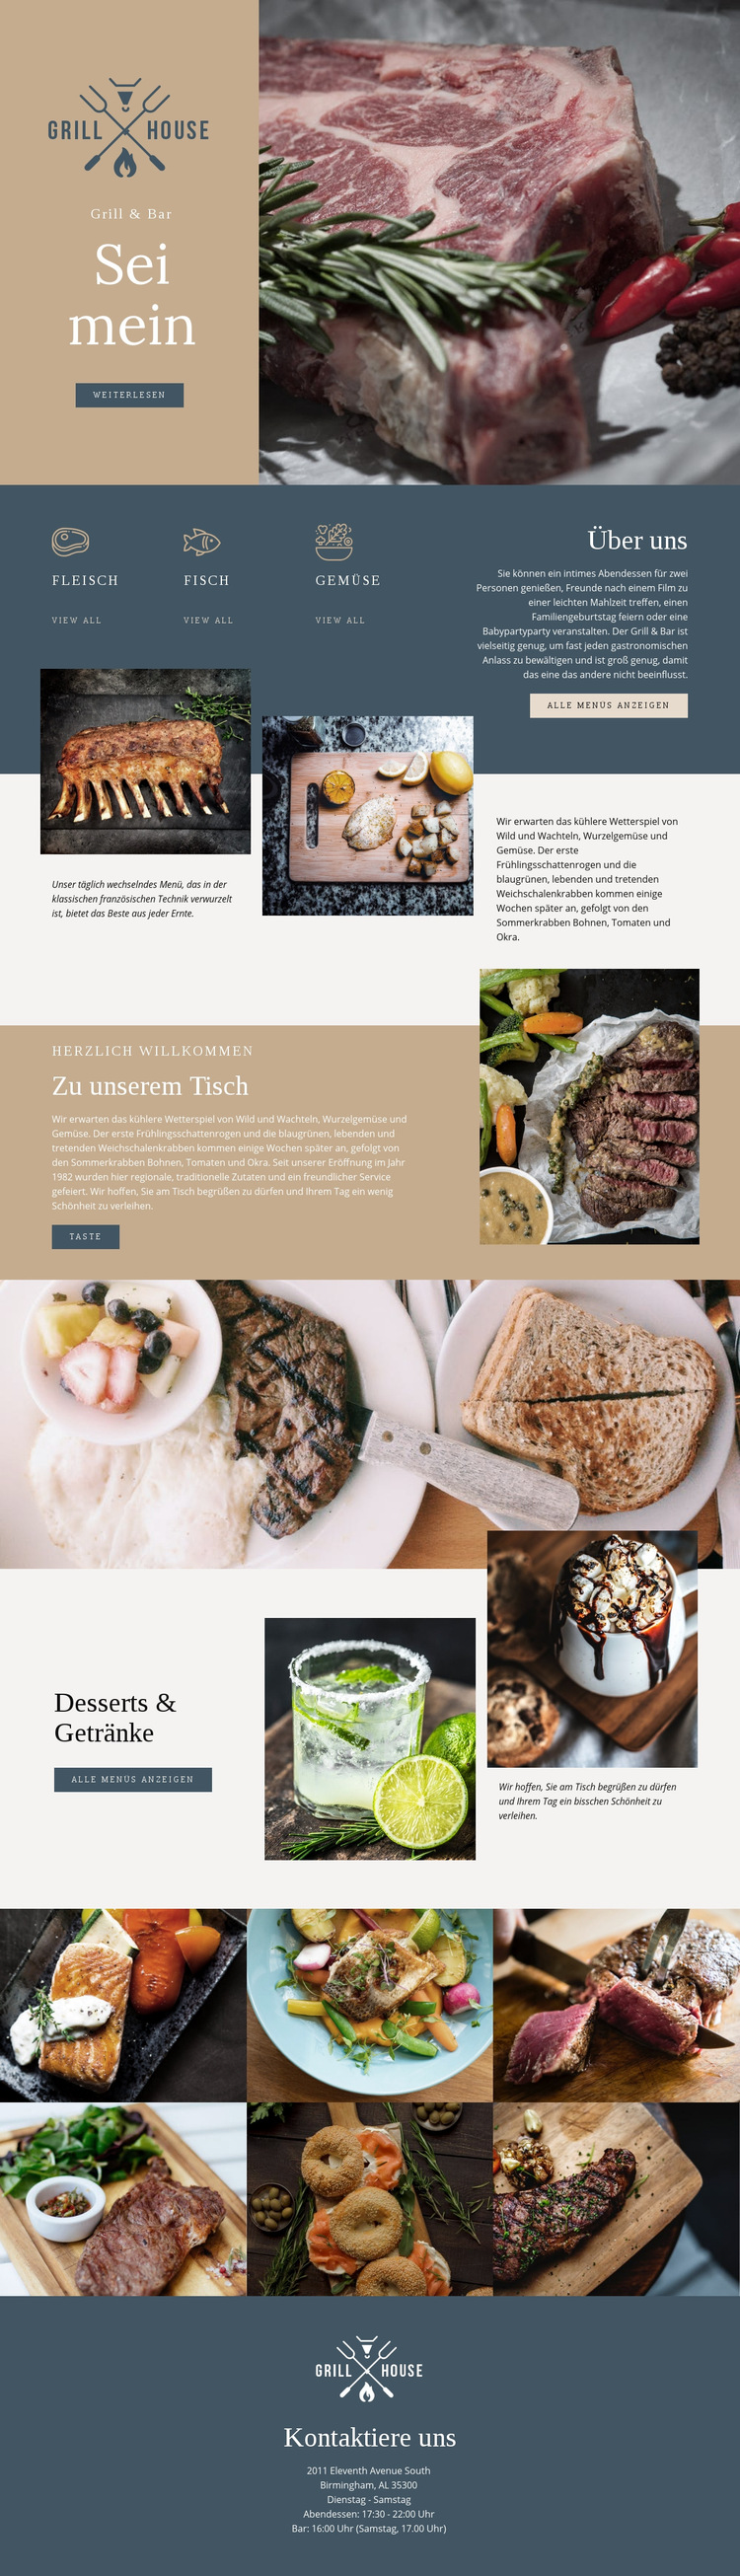 Feinstes Grillhaus Restaurant Website-Vorlage